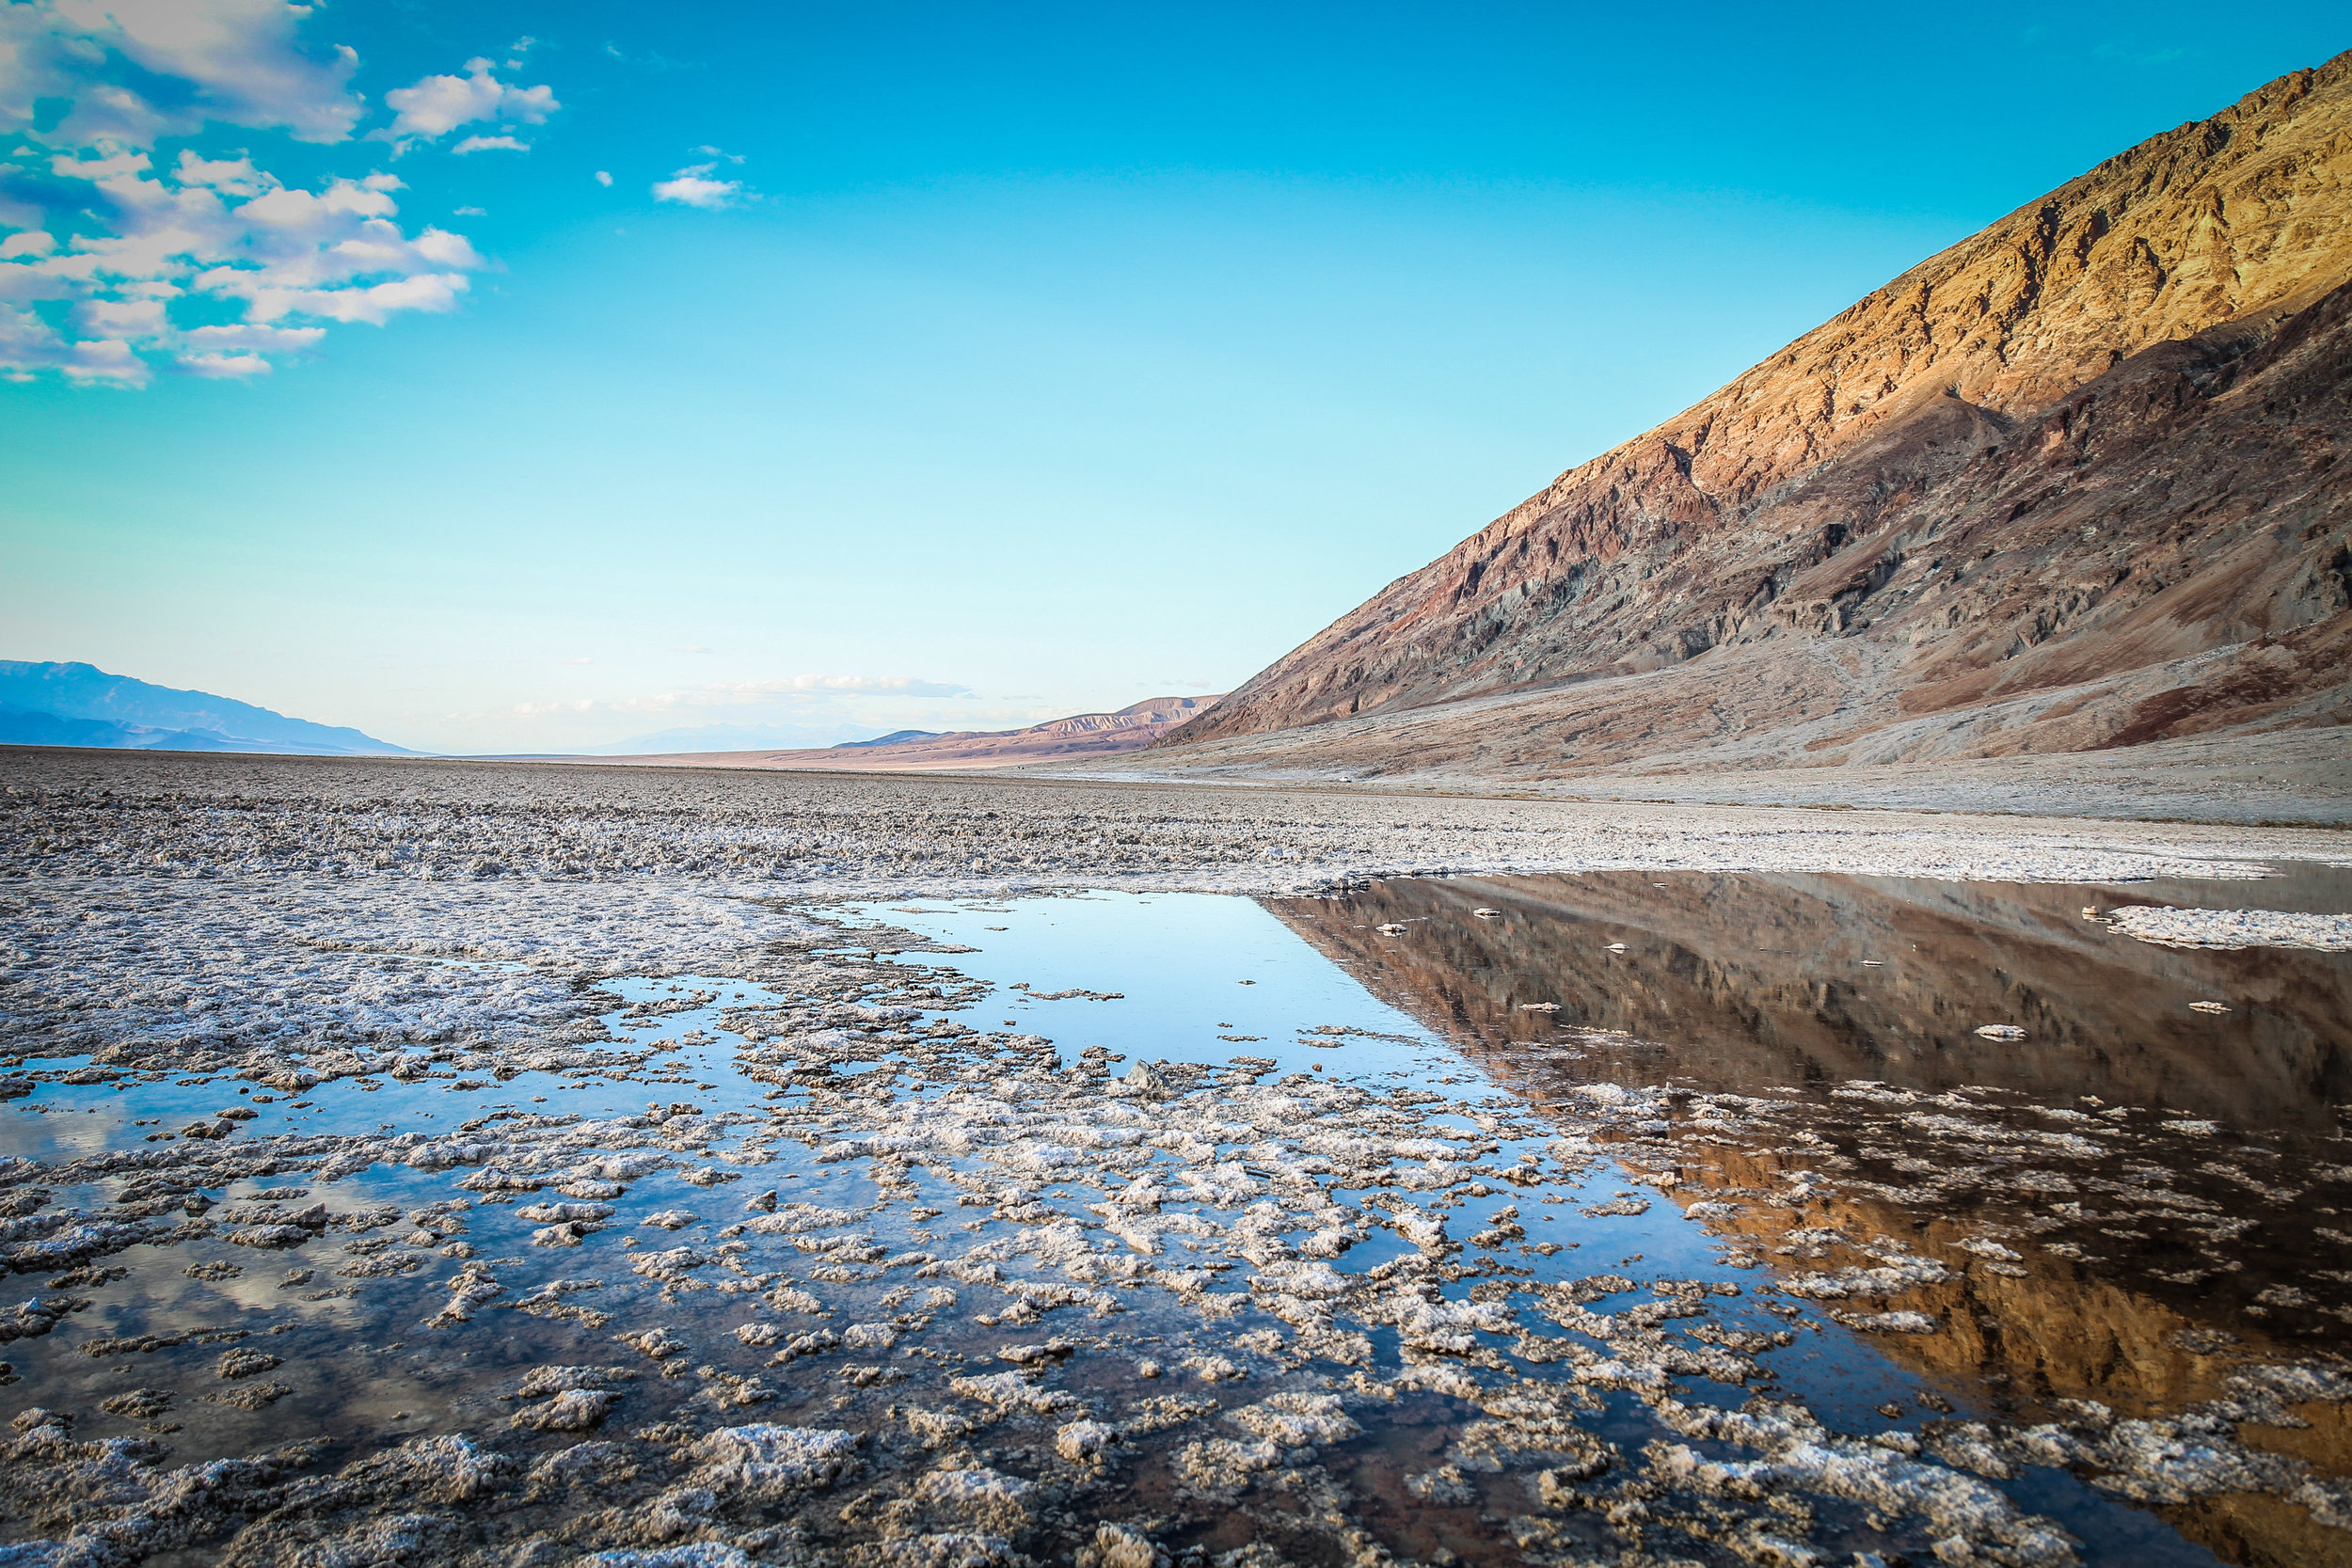 Death Valley_Badwater_zabriskie point-19.JPG